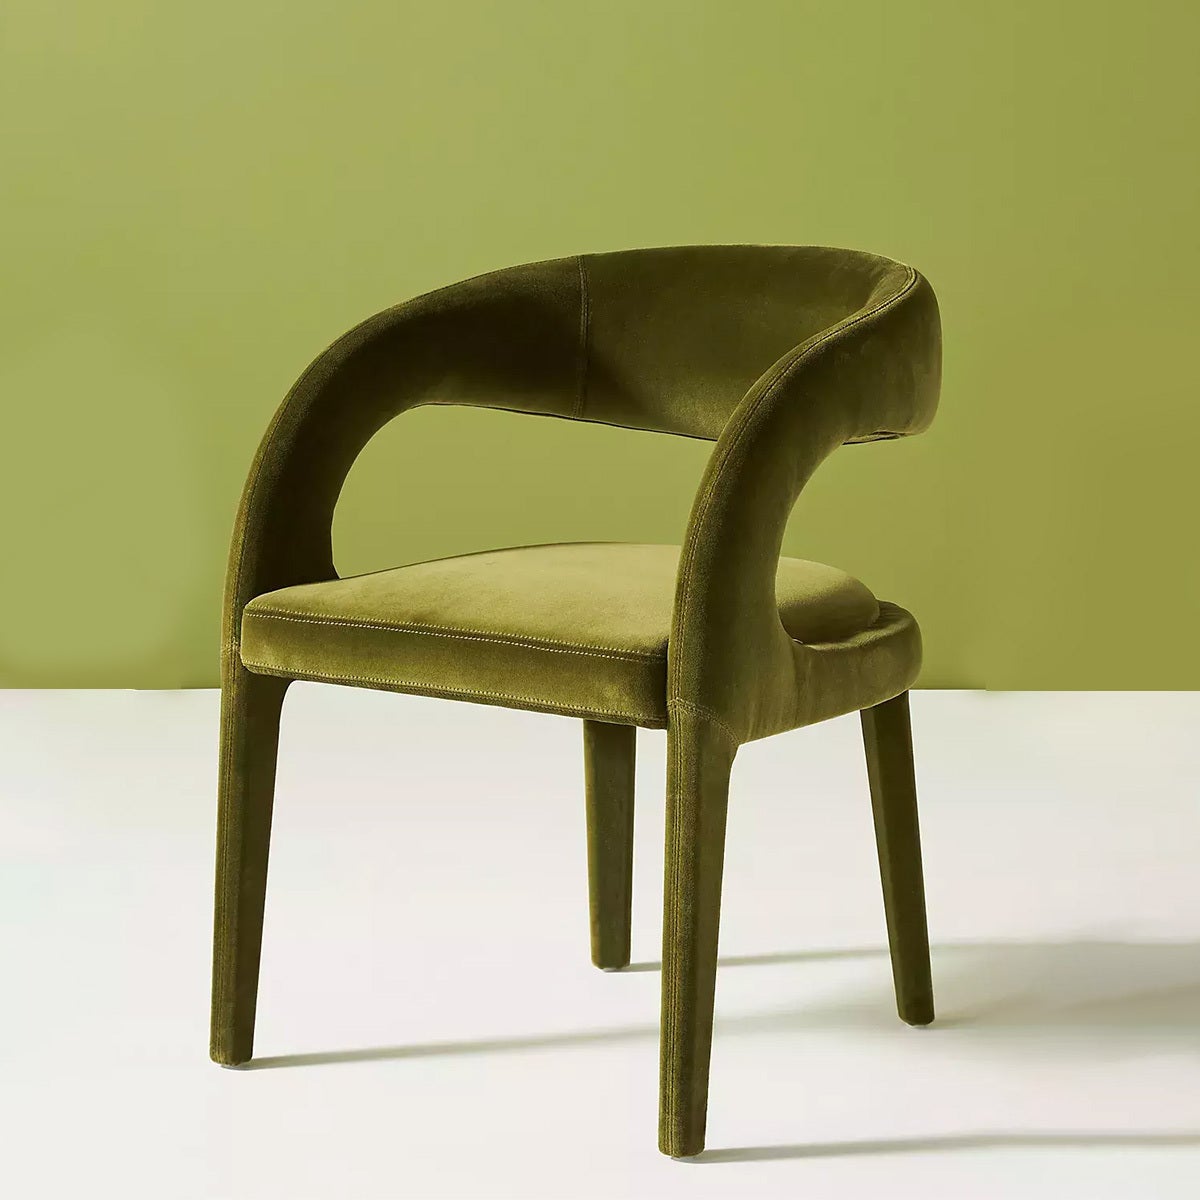 Green velvet chair by Anthropologie